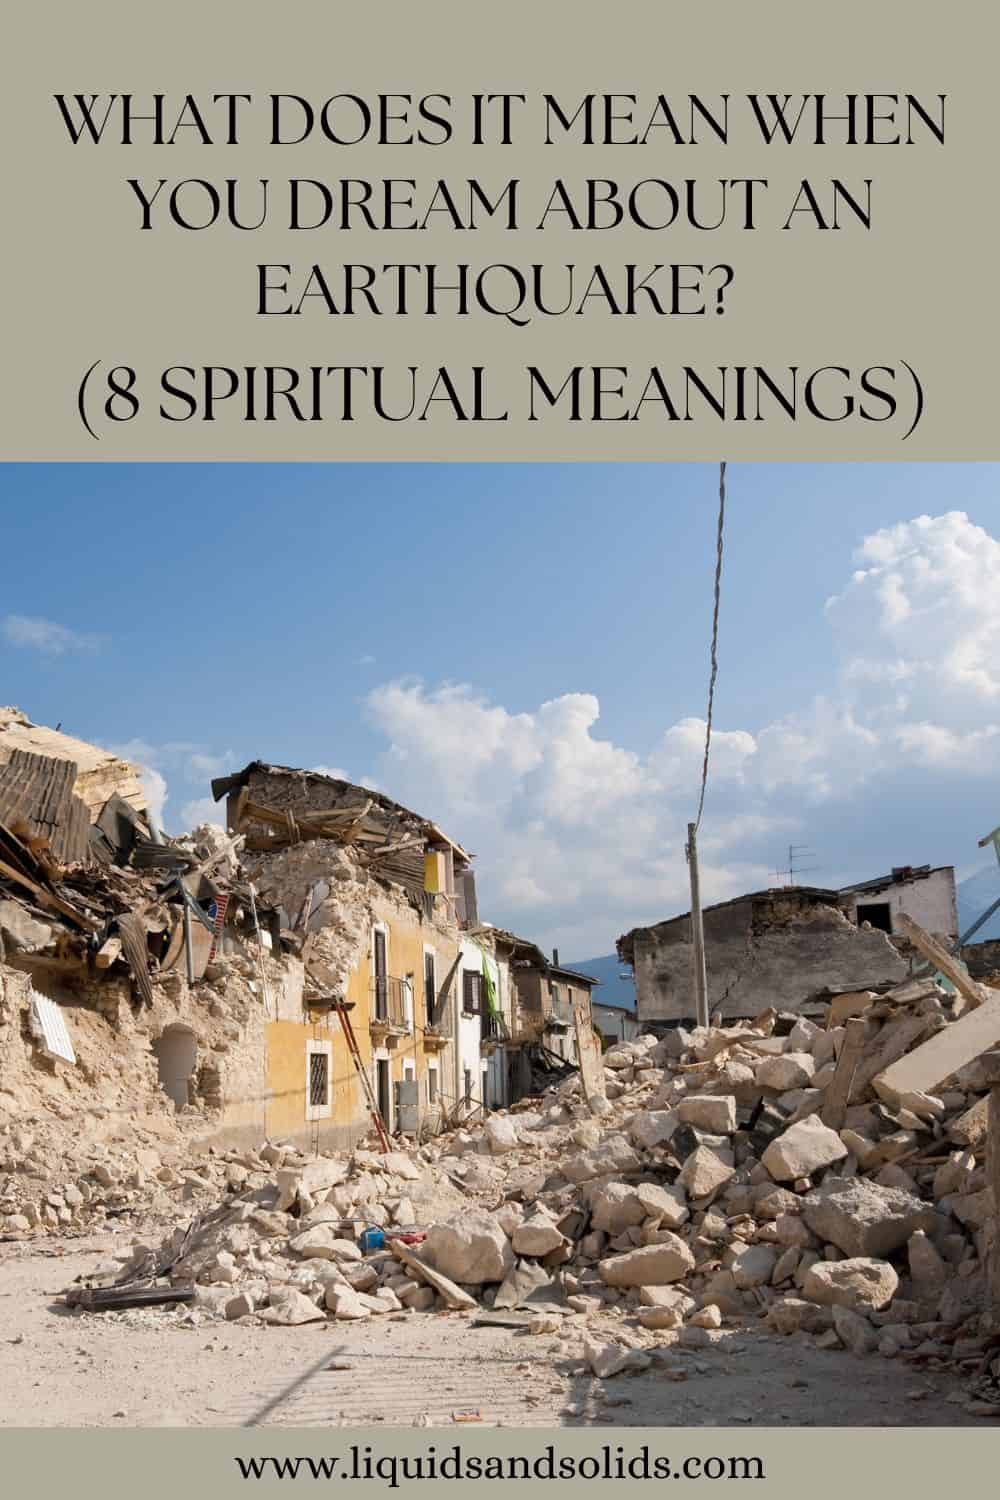  ماذا يعني عندما تحلم بحدوث زلزال؟ (8 معاني روحية)